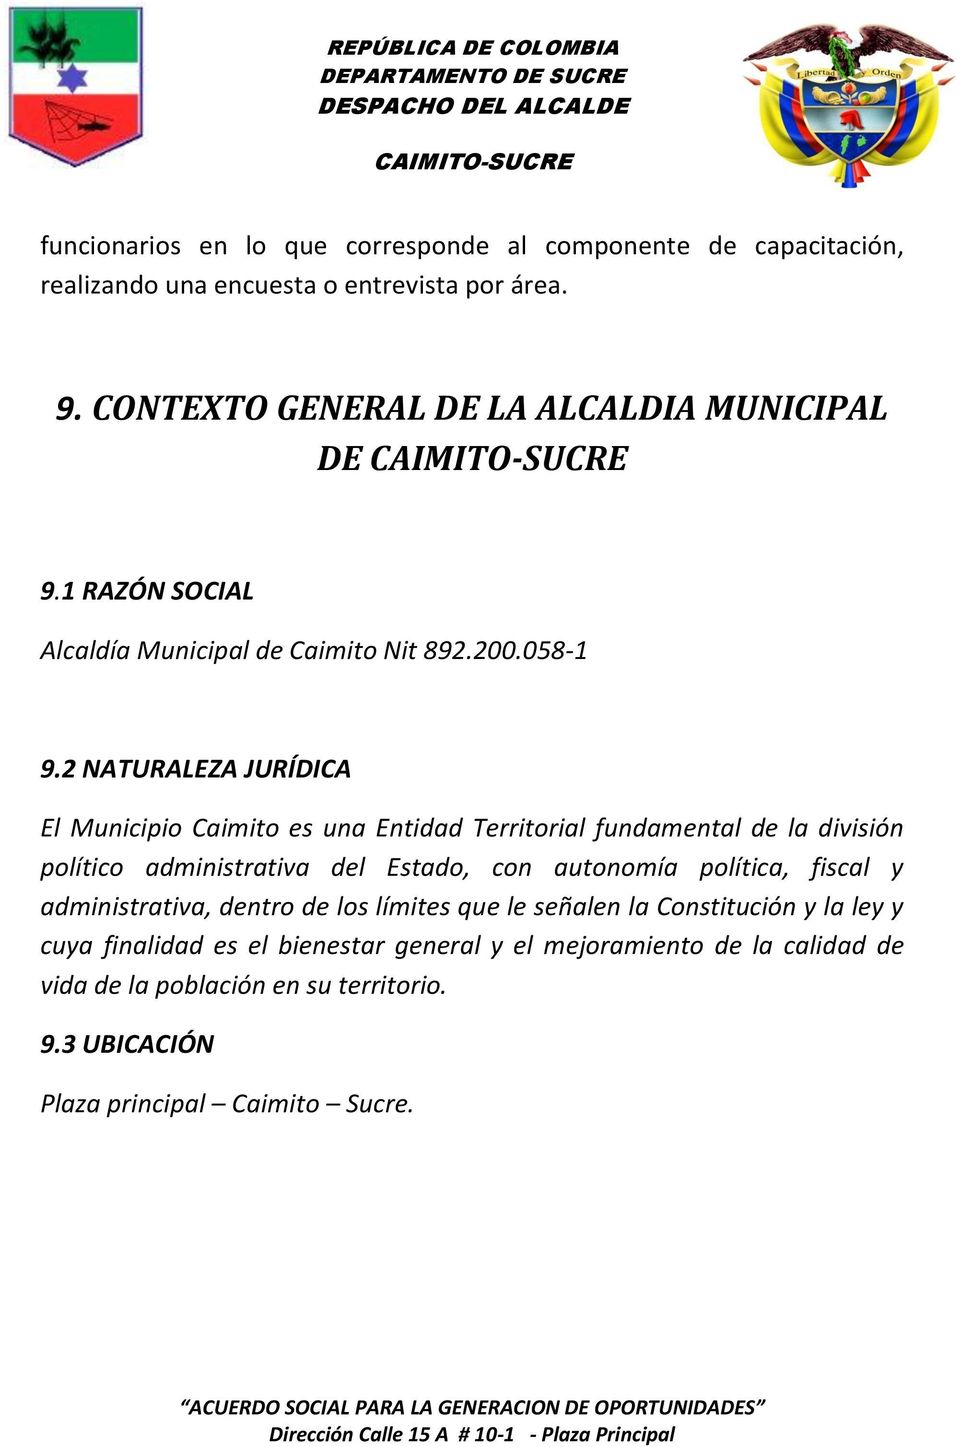 2 NATURALEZA JURÍDICA El Municipio Caimito es una Entidad Territorial fundamental de la división político administrativa del Estado, con autonomía política,